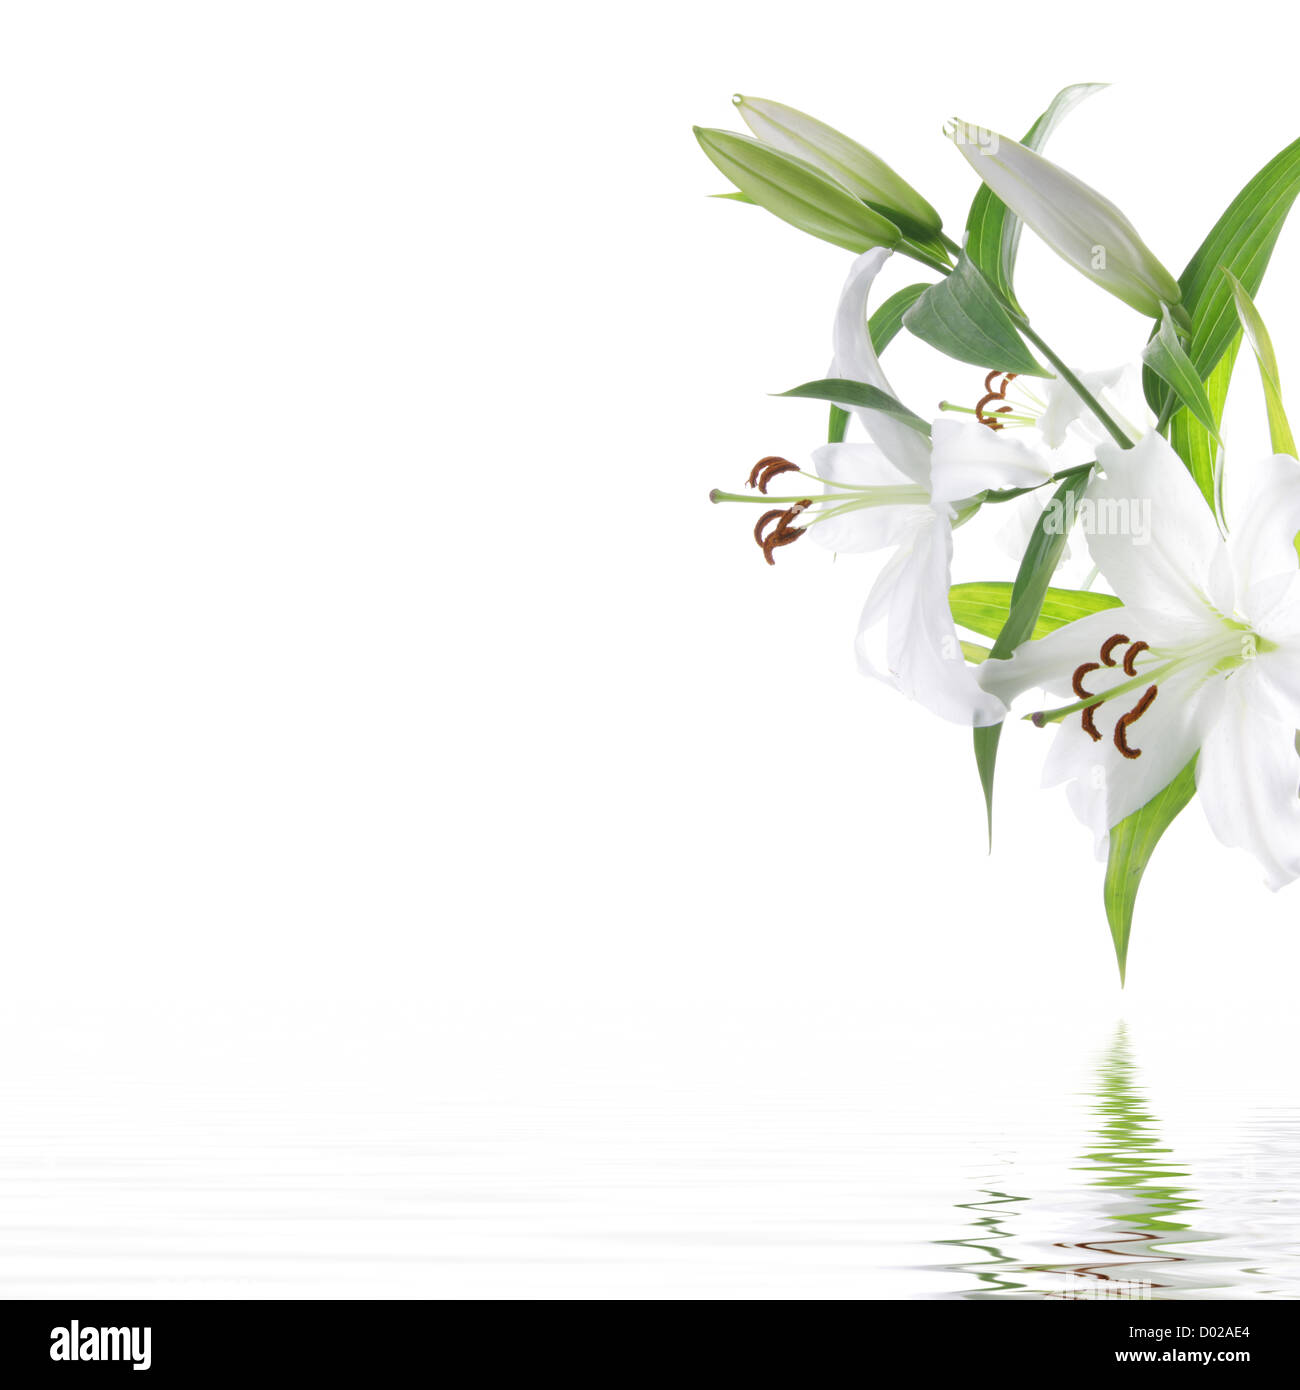 Hoa ly trắng là biểu tượng của sự tinh khiết và thuần khiết. Hãy chiêm ngưỡng hình ảnh hoa ly trắng, bạn sẽ cảm nhận được vẻ đẹp thanh lịch và dịu dàng của chúng. Chắc chắn đây sẽ là một trải nghiệm thú vị cho bạn! 